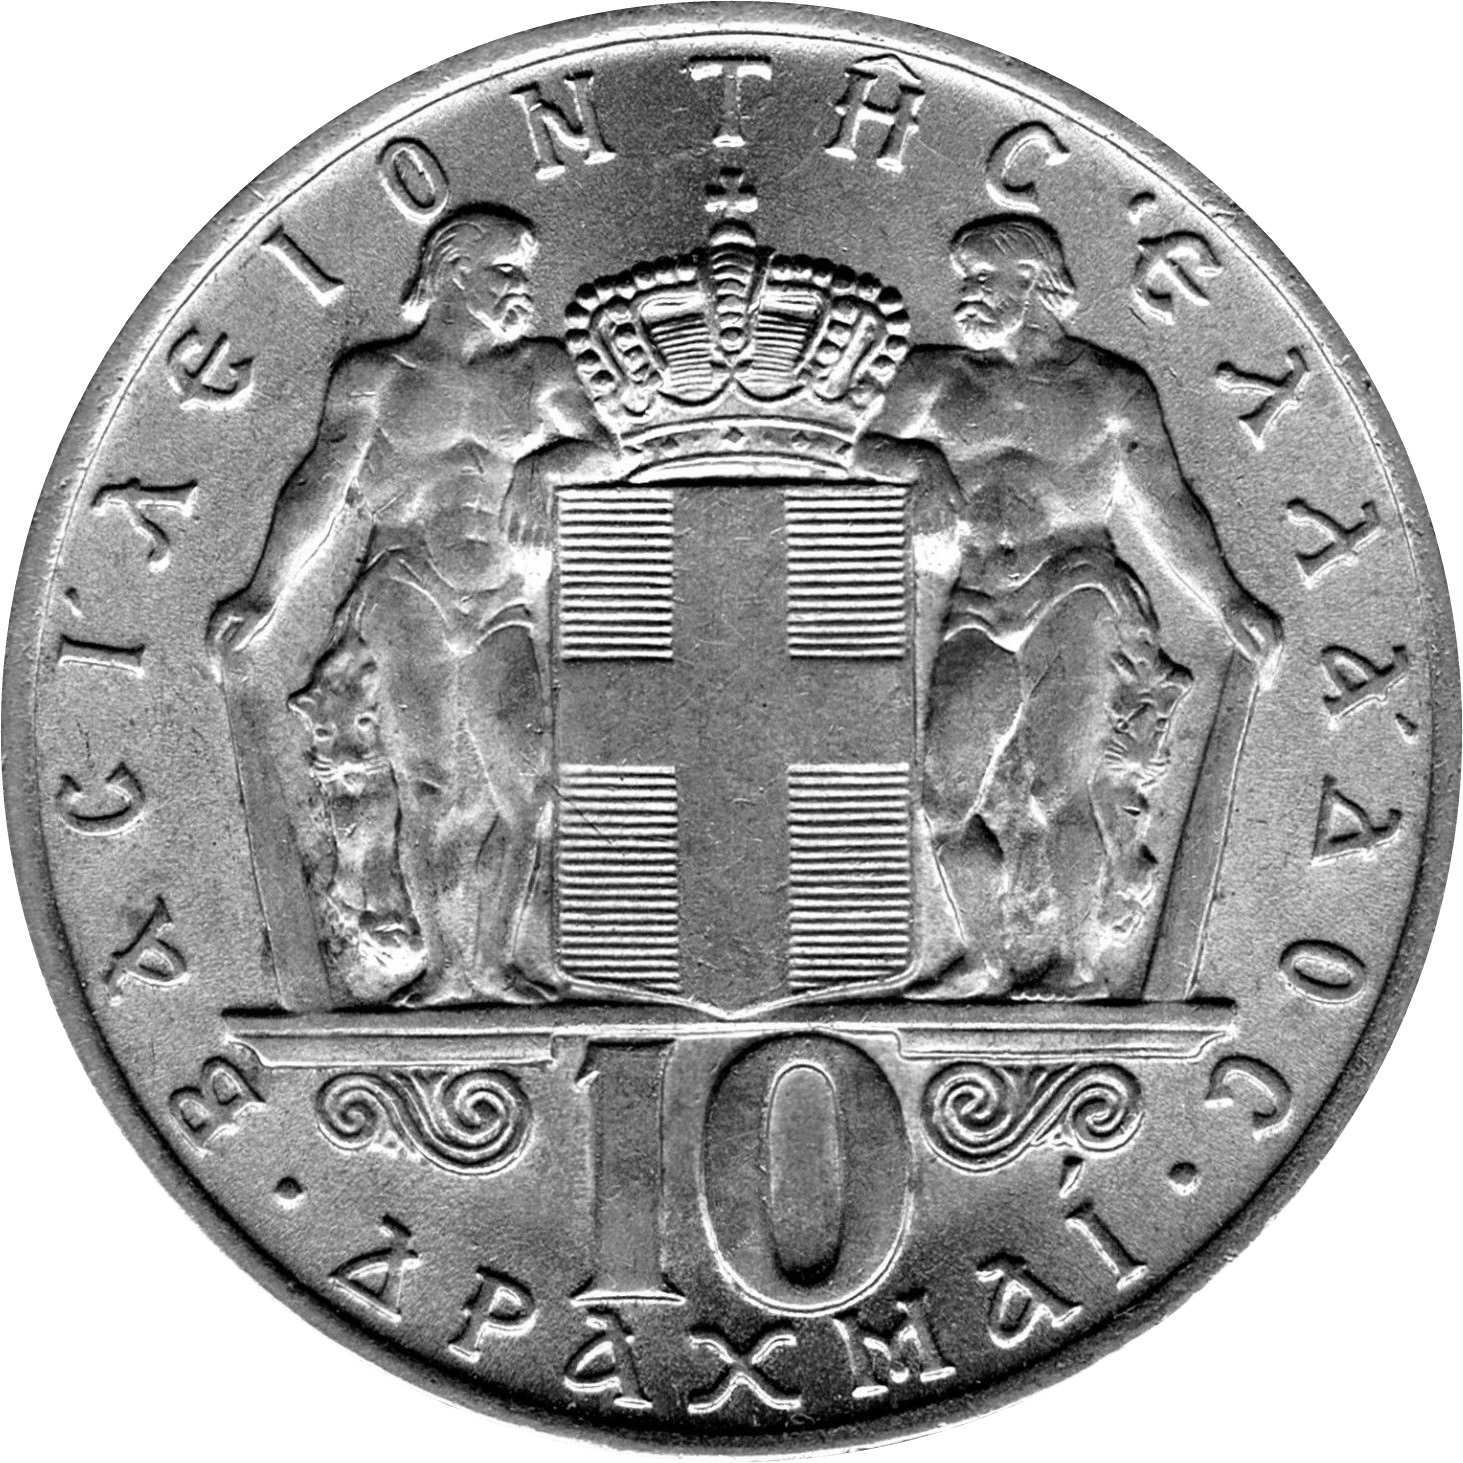 Greece 10 drachmas 1968 [eur15776]